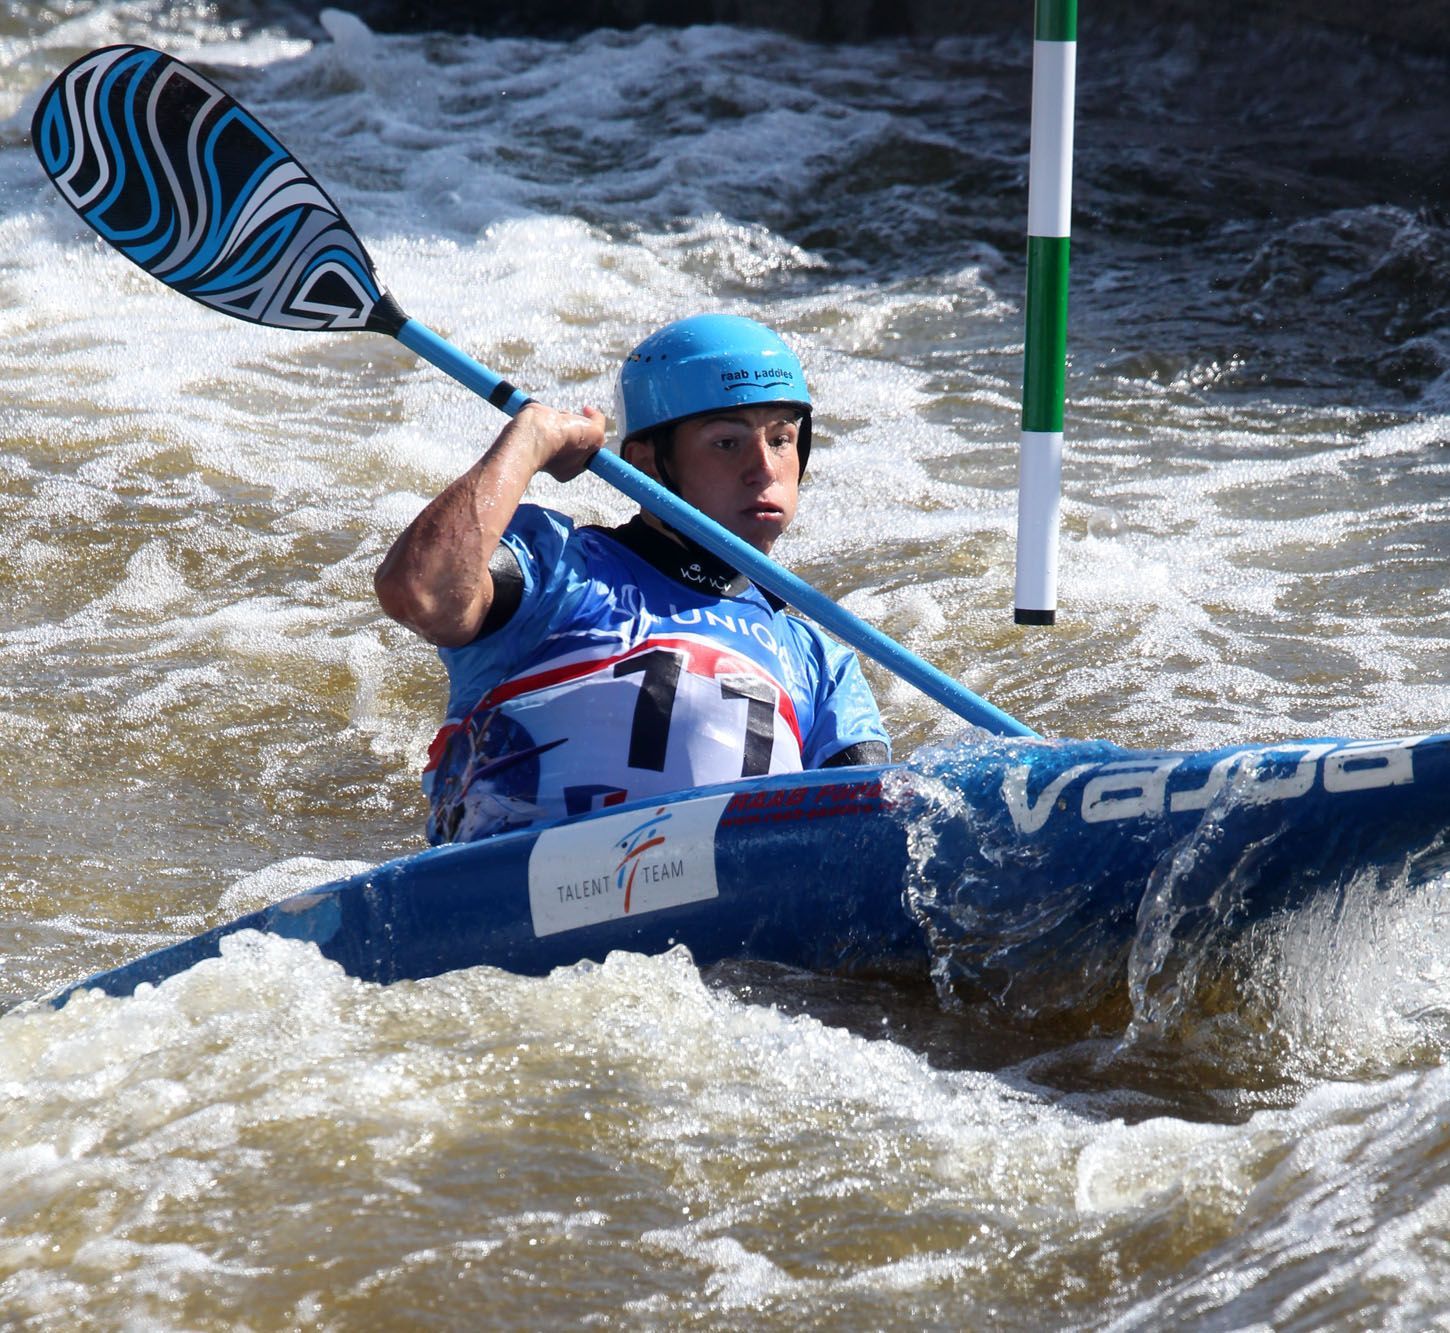 MS ve vodním slalomu 2013: Jiří Prskavec